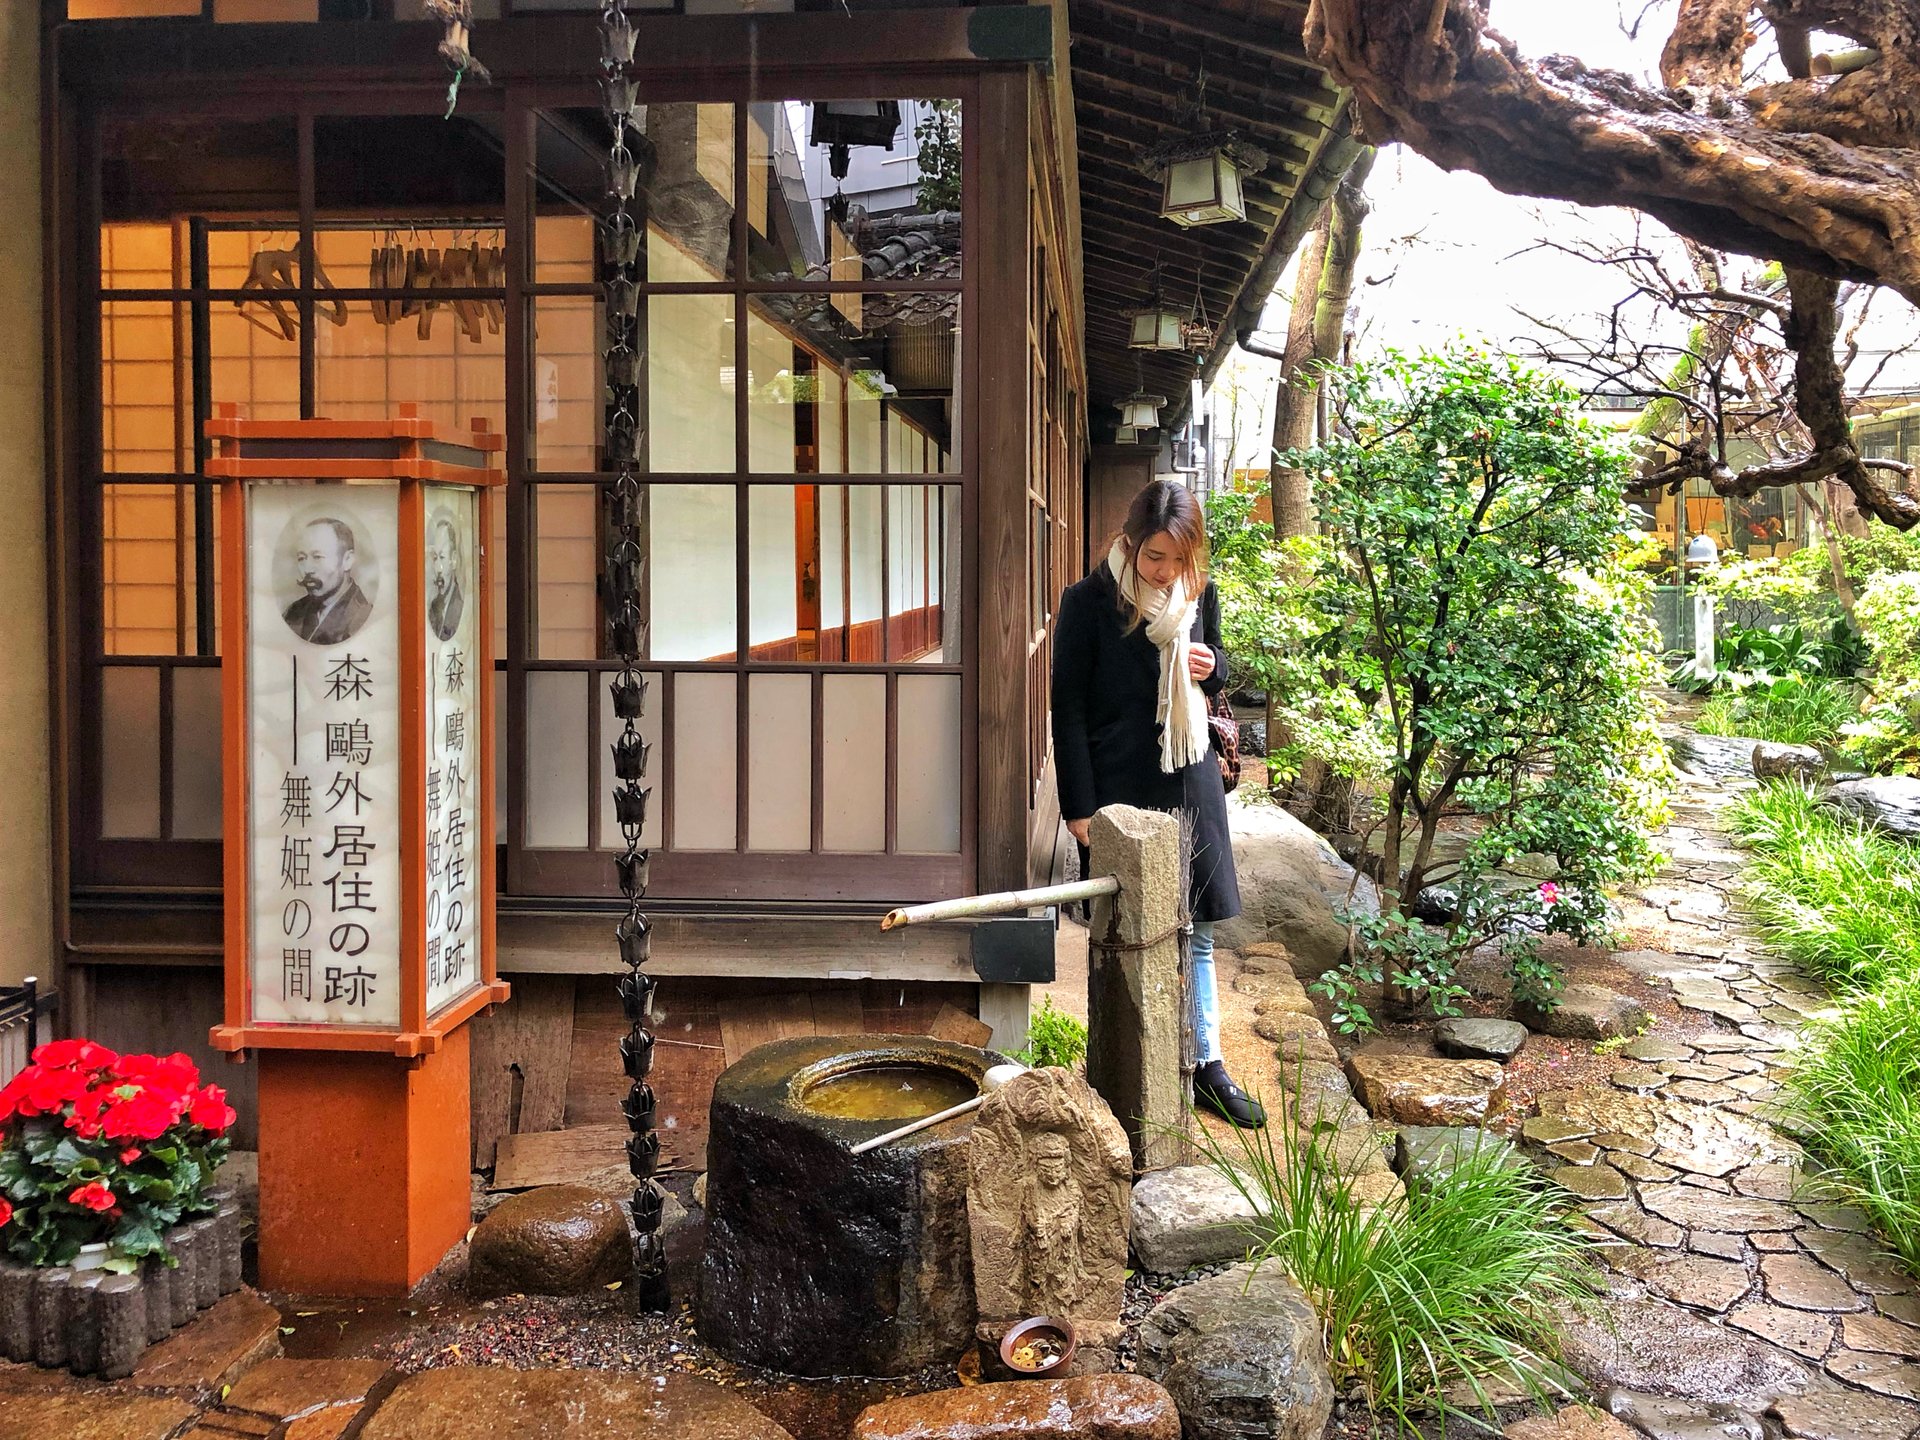 上野に天然温泉⁉森鴎外ゆかりのお屋敷で1泊2日のタイムスリップ